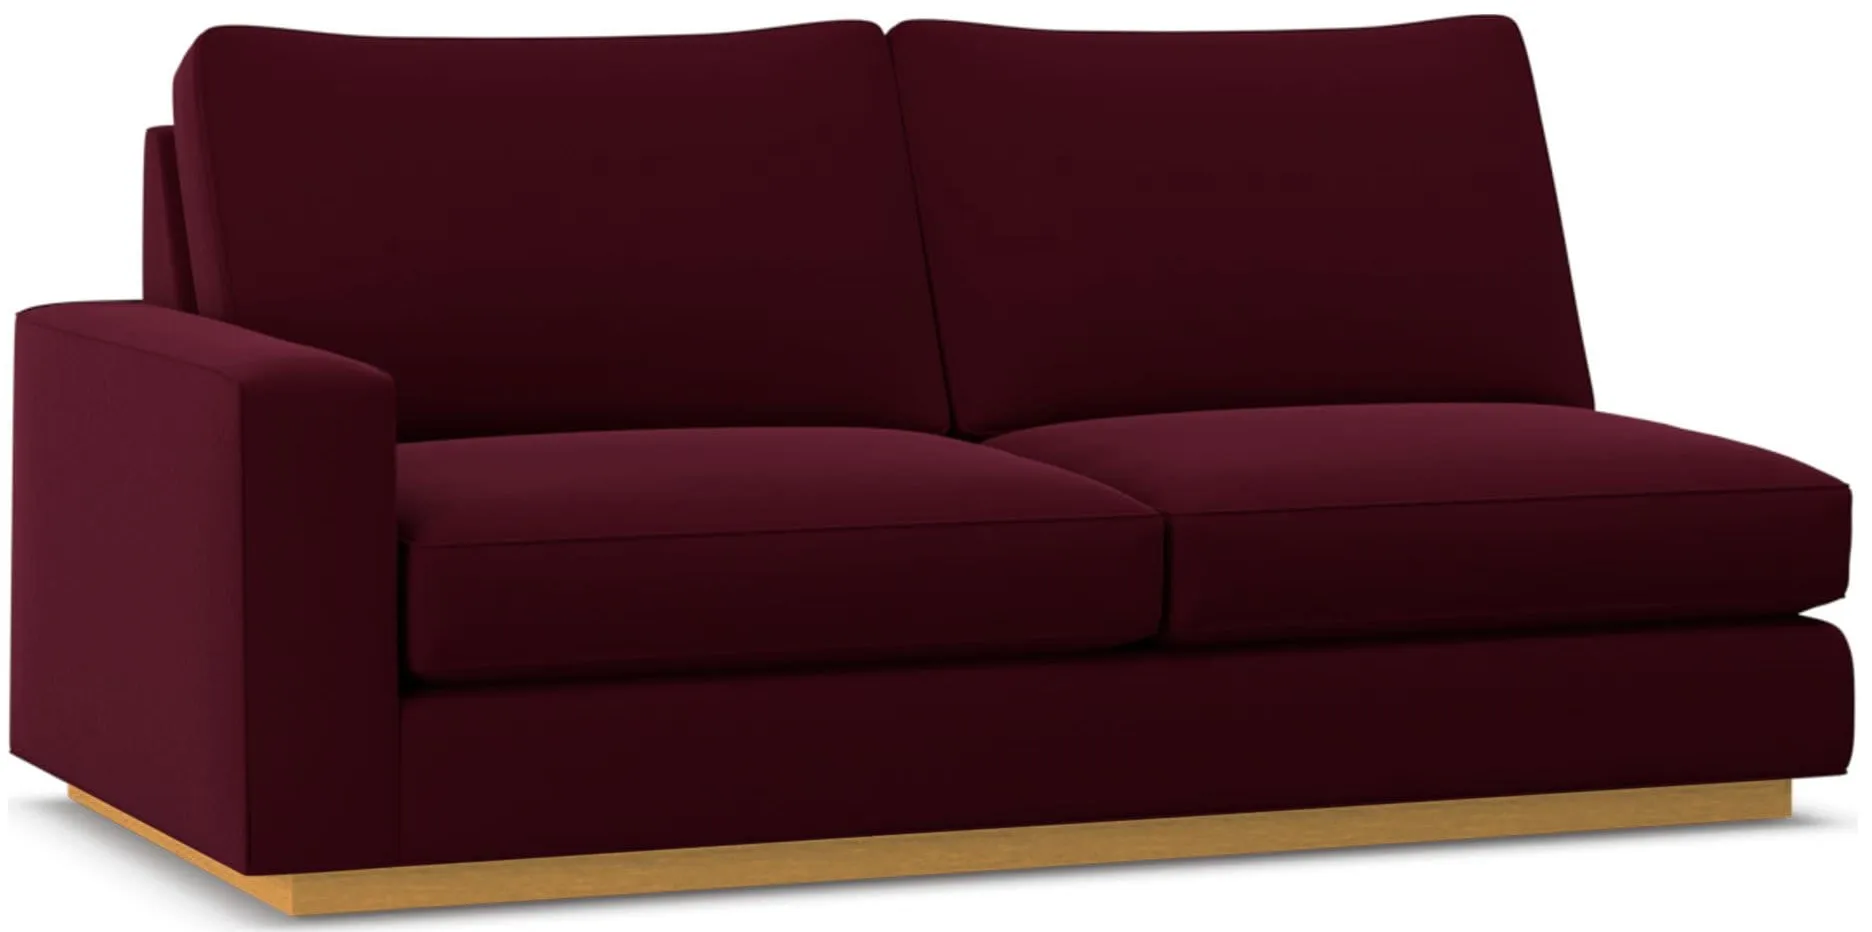 Harper Left Arm Apartment Size Sofa